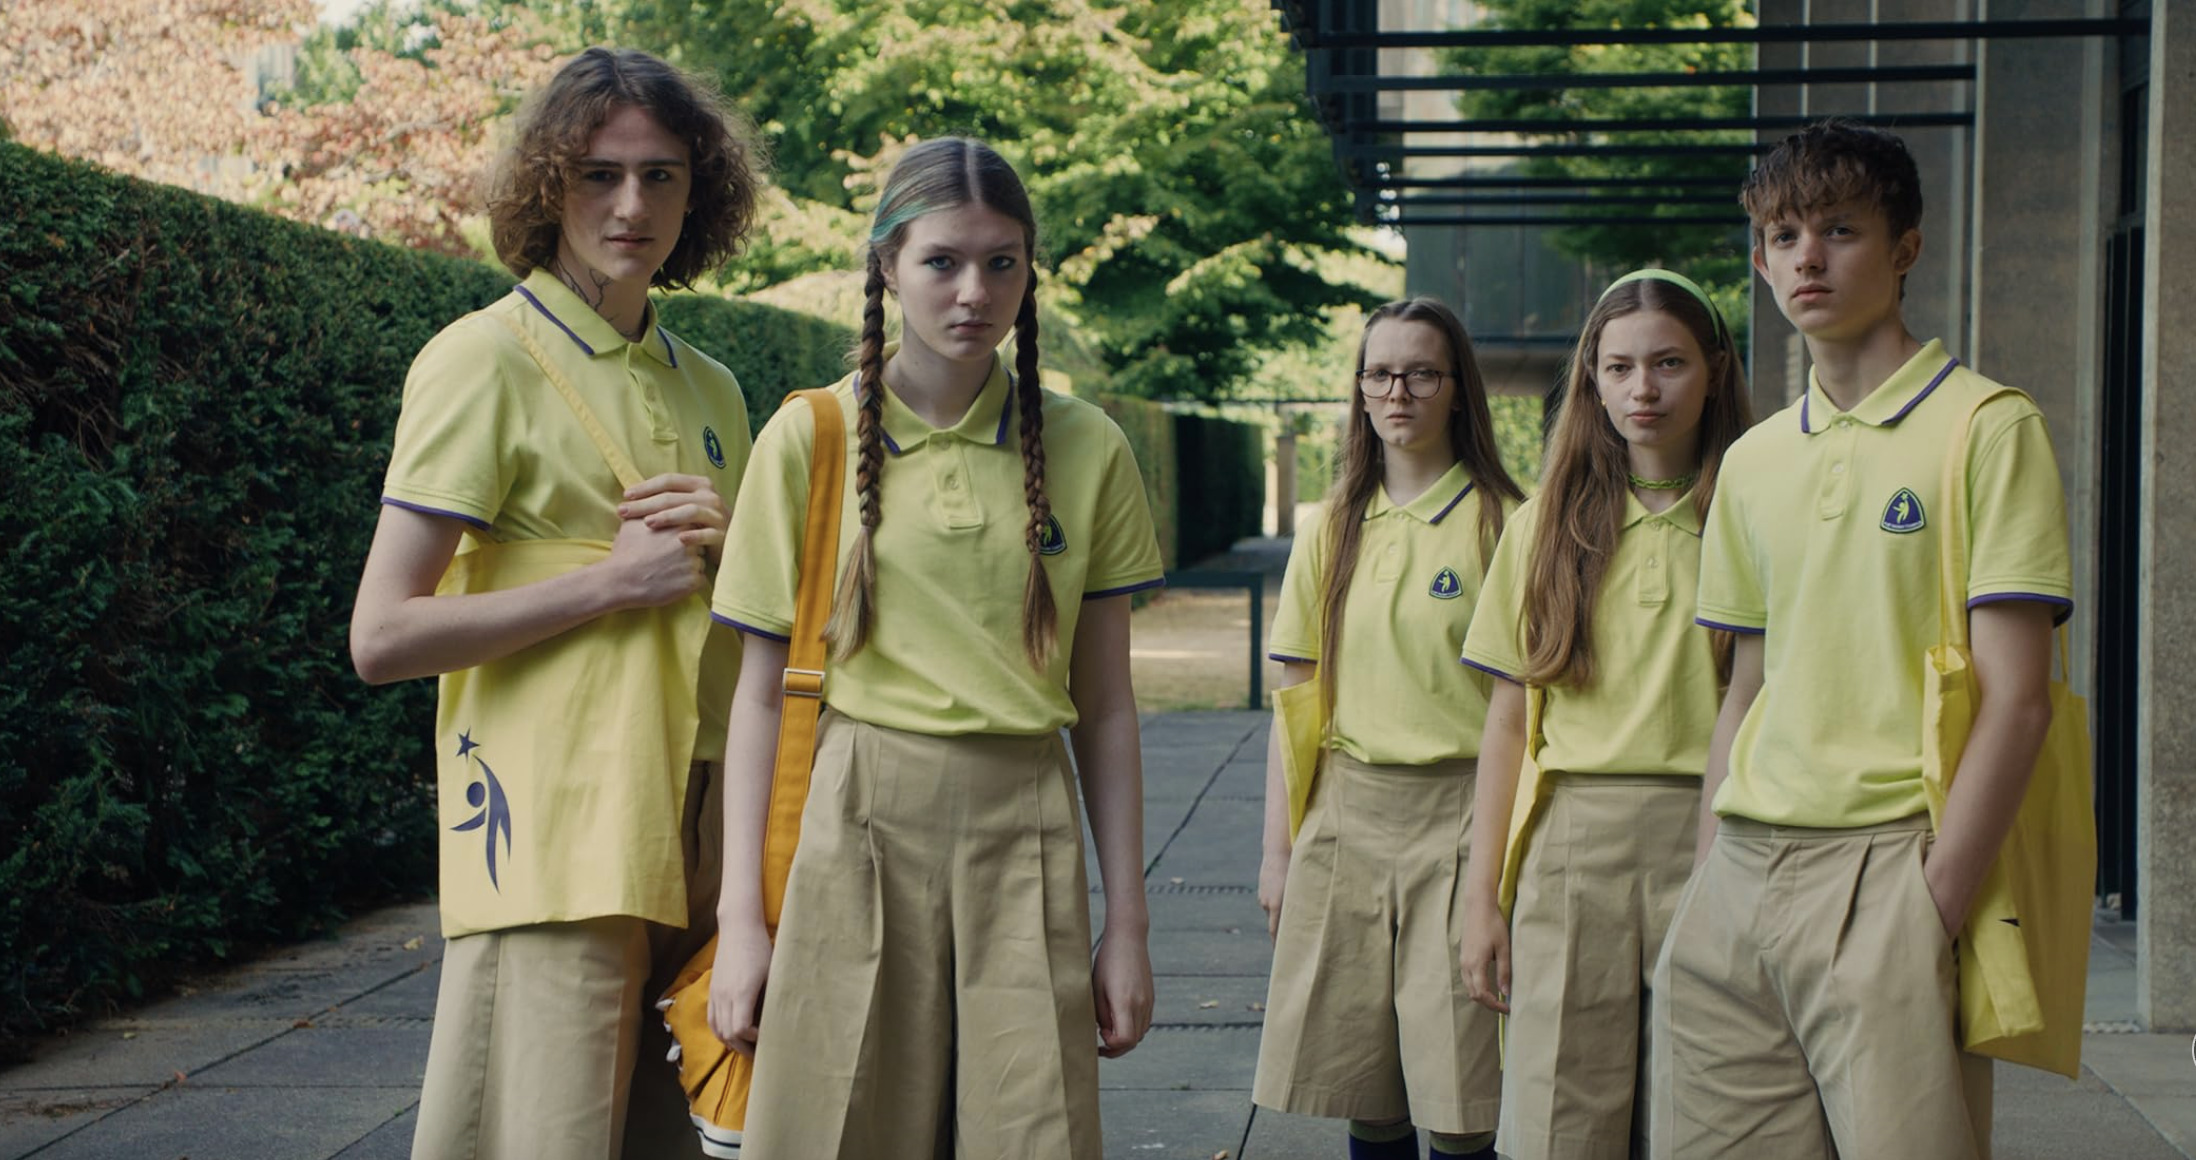 En grupp elever i gula pikétröjor och beige kortbyxor eller kjolar